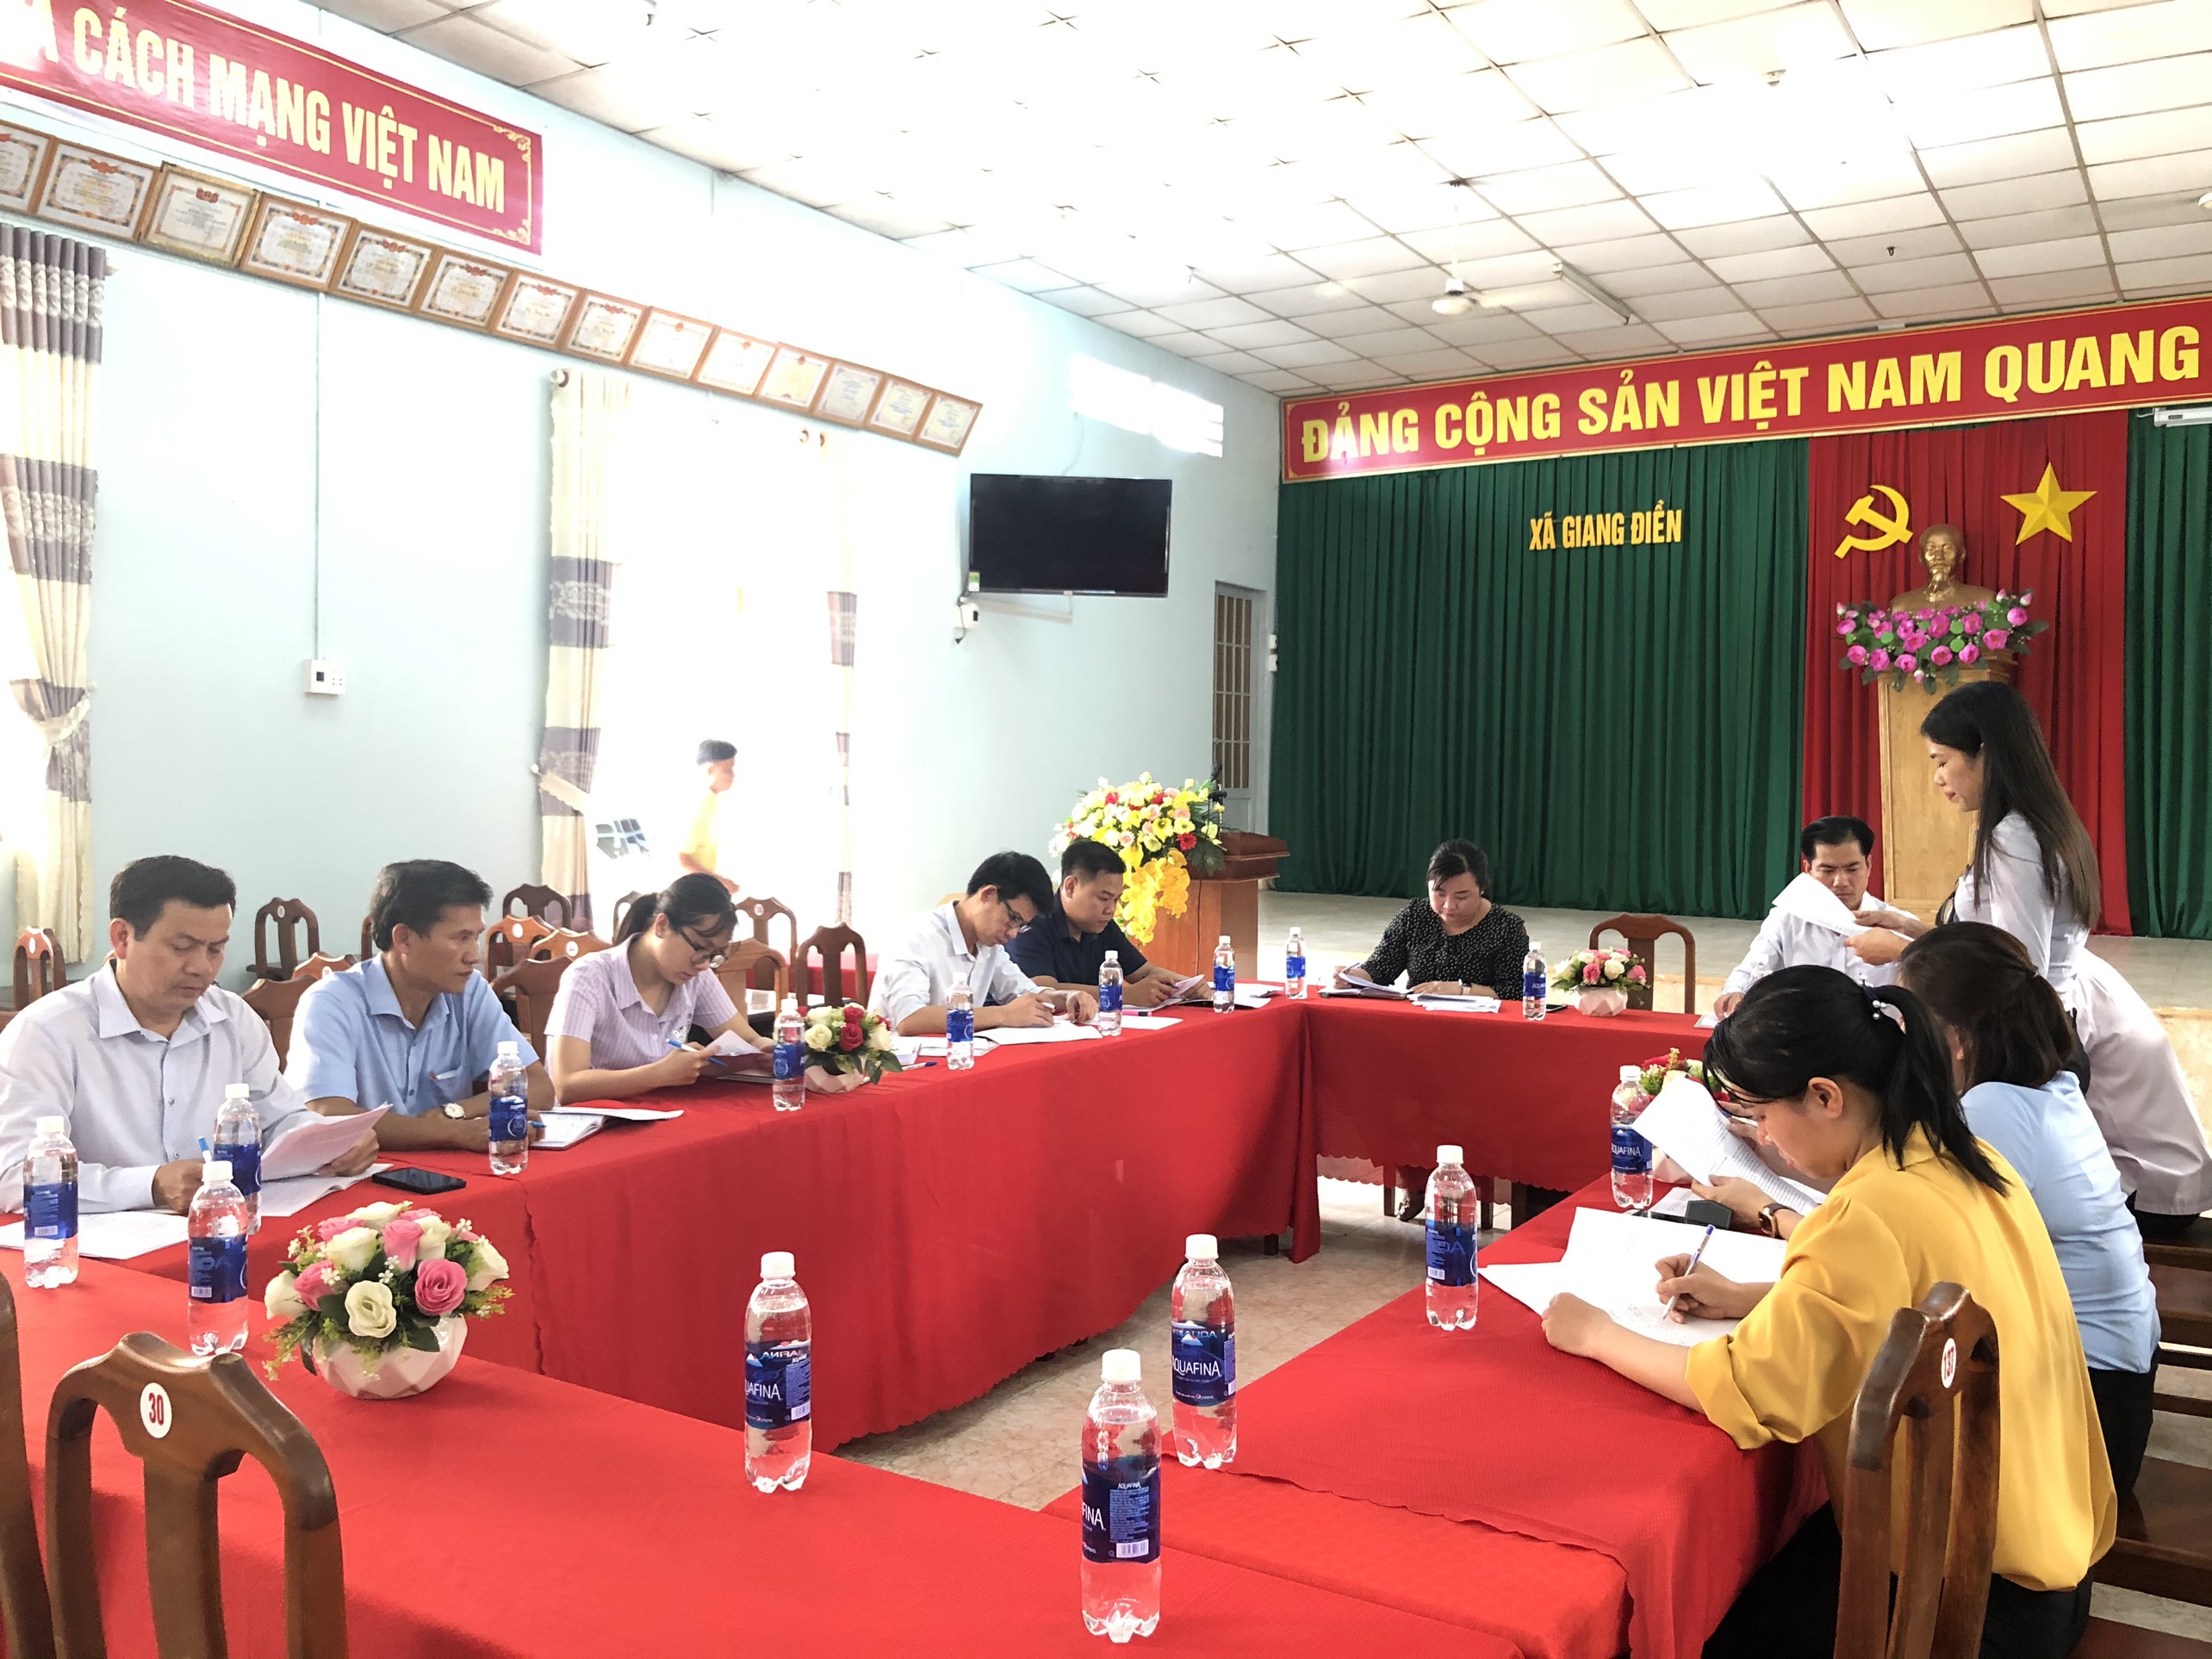 kiểm tra giám sát phản biện năm 2020 tại xã Giang Điền.jpg